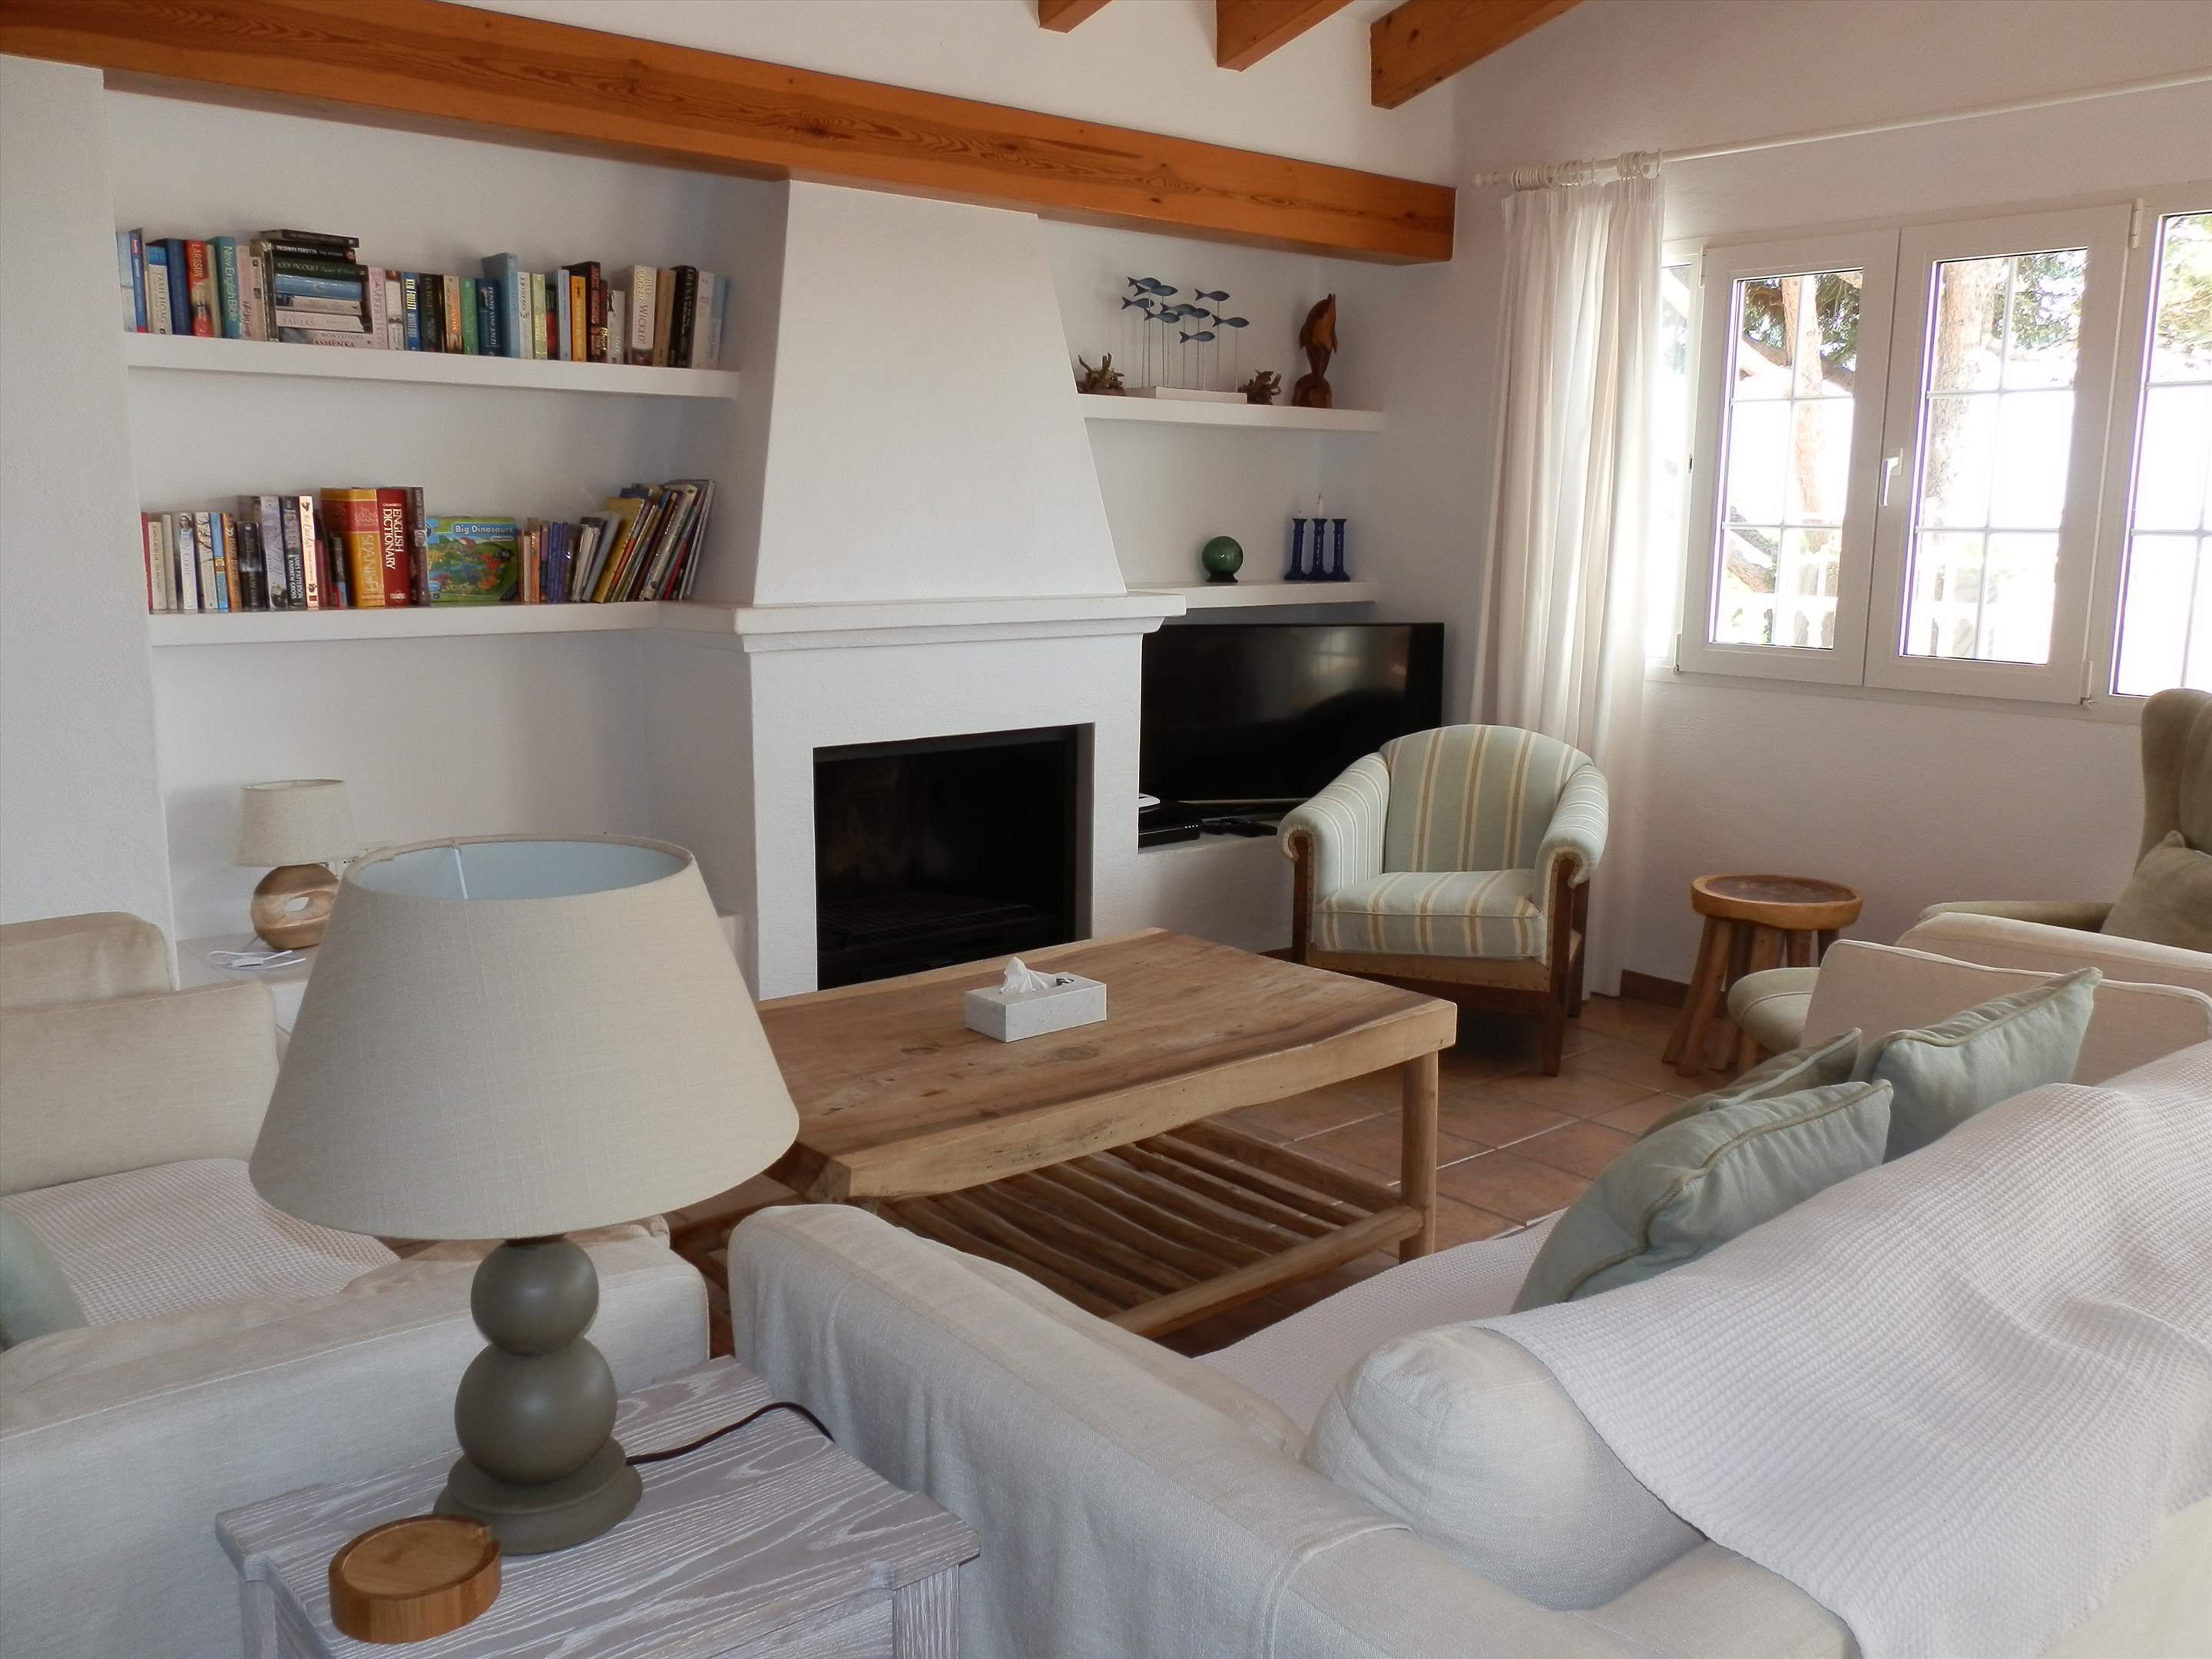 Casa del Mar de Ana-Cristo, 5 Bedroom rate, 5 bedroom villa in Mahon, San Luis & South East, Menorca Photo #6